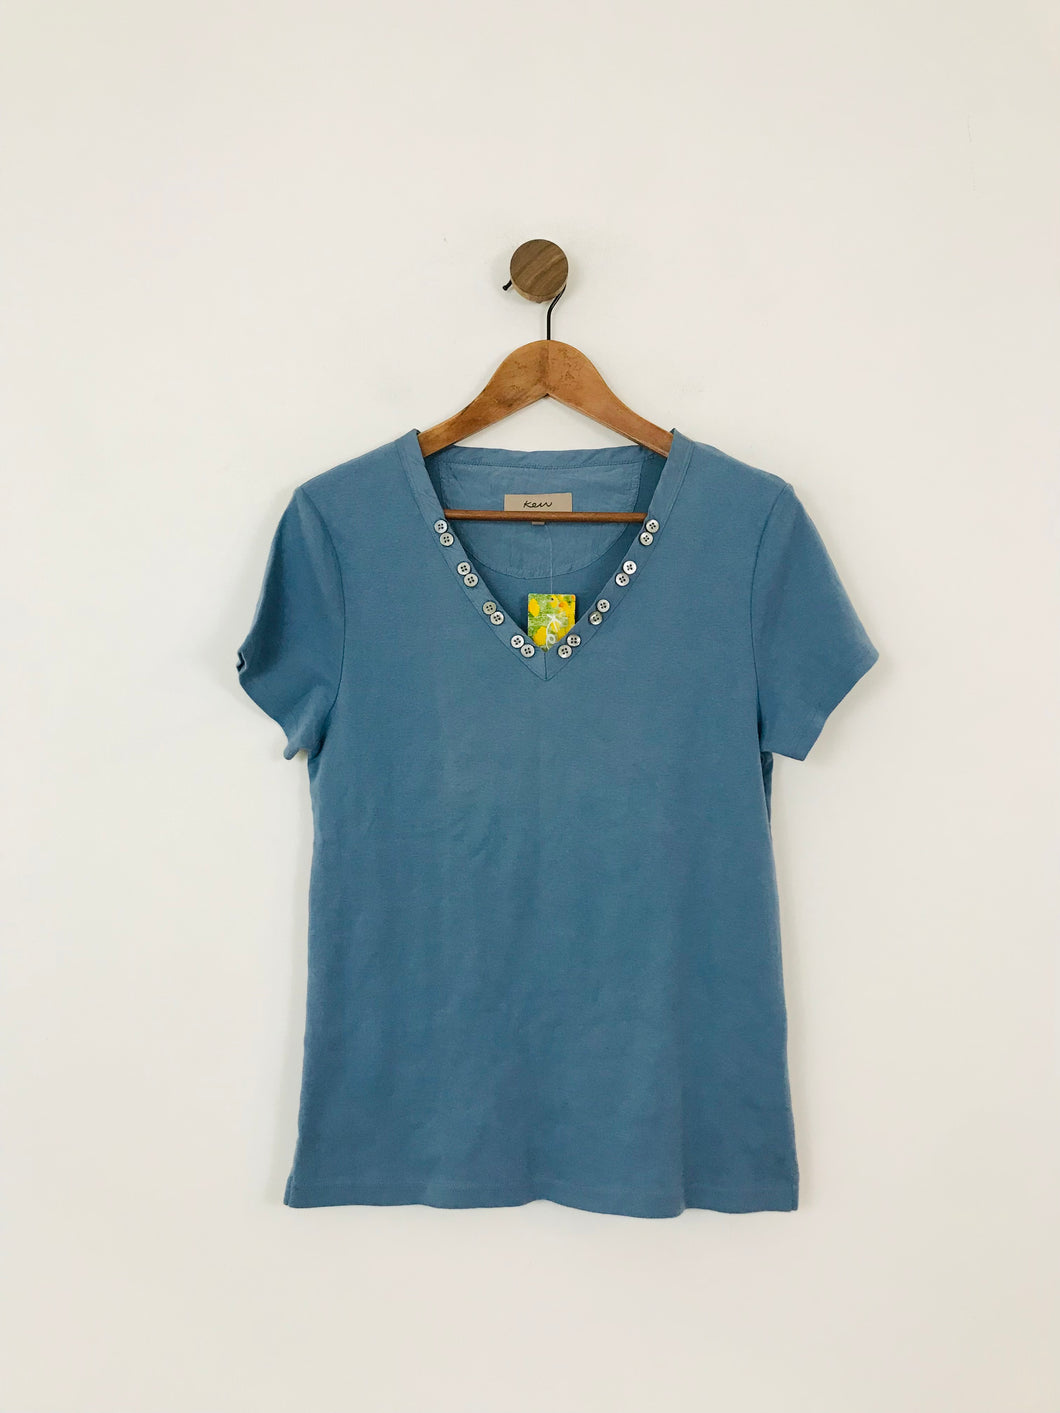 Kew Women's V-Neck T-Shirt NWT | L UK14 | Blue